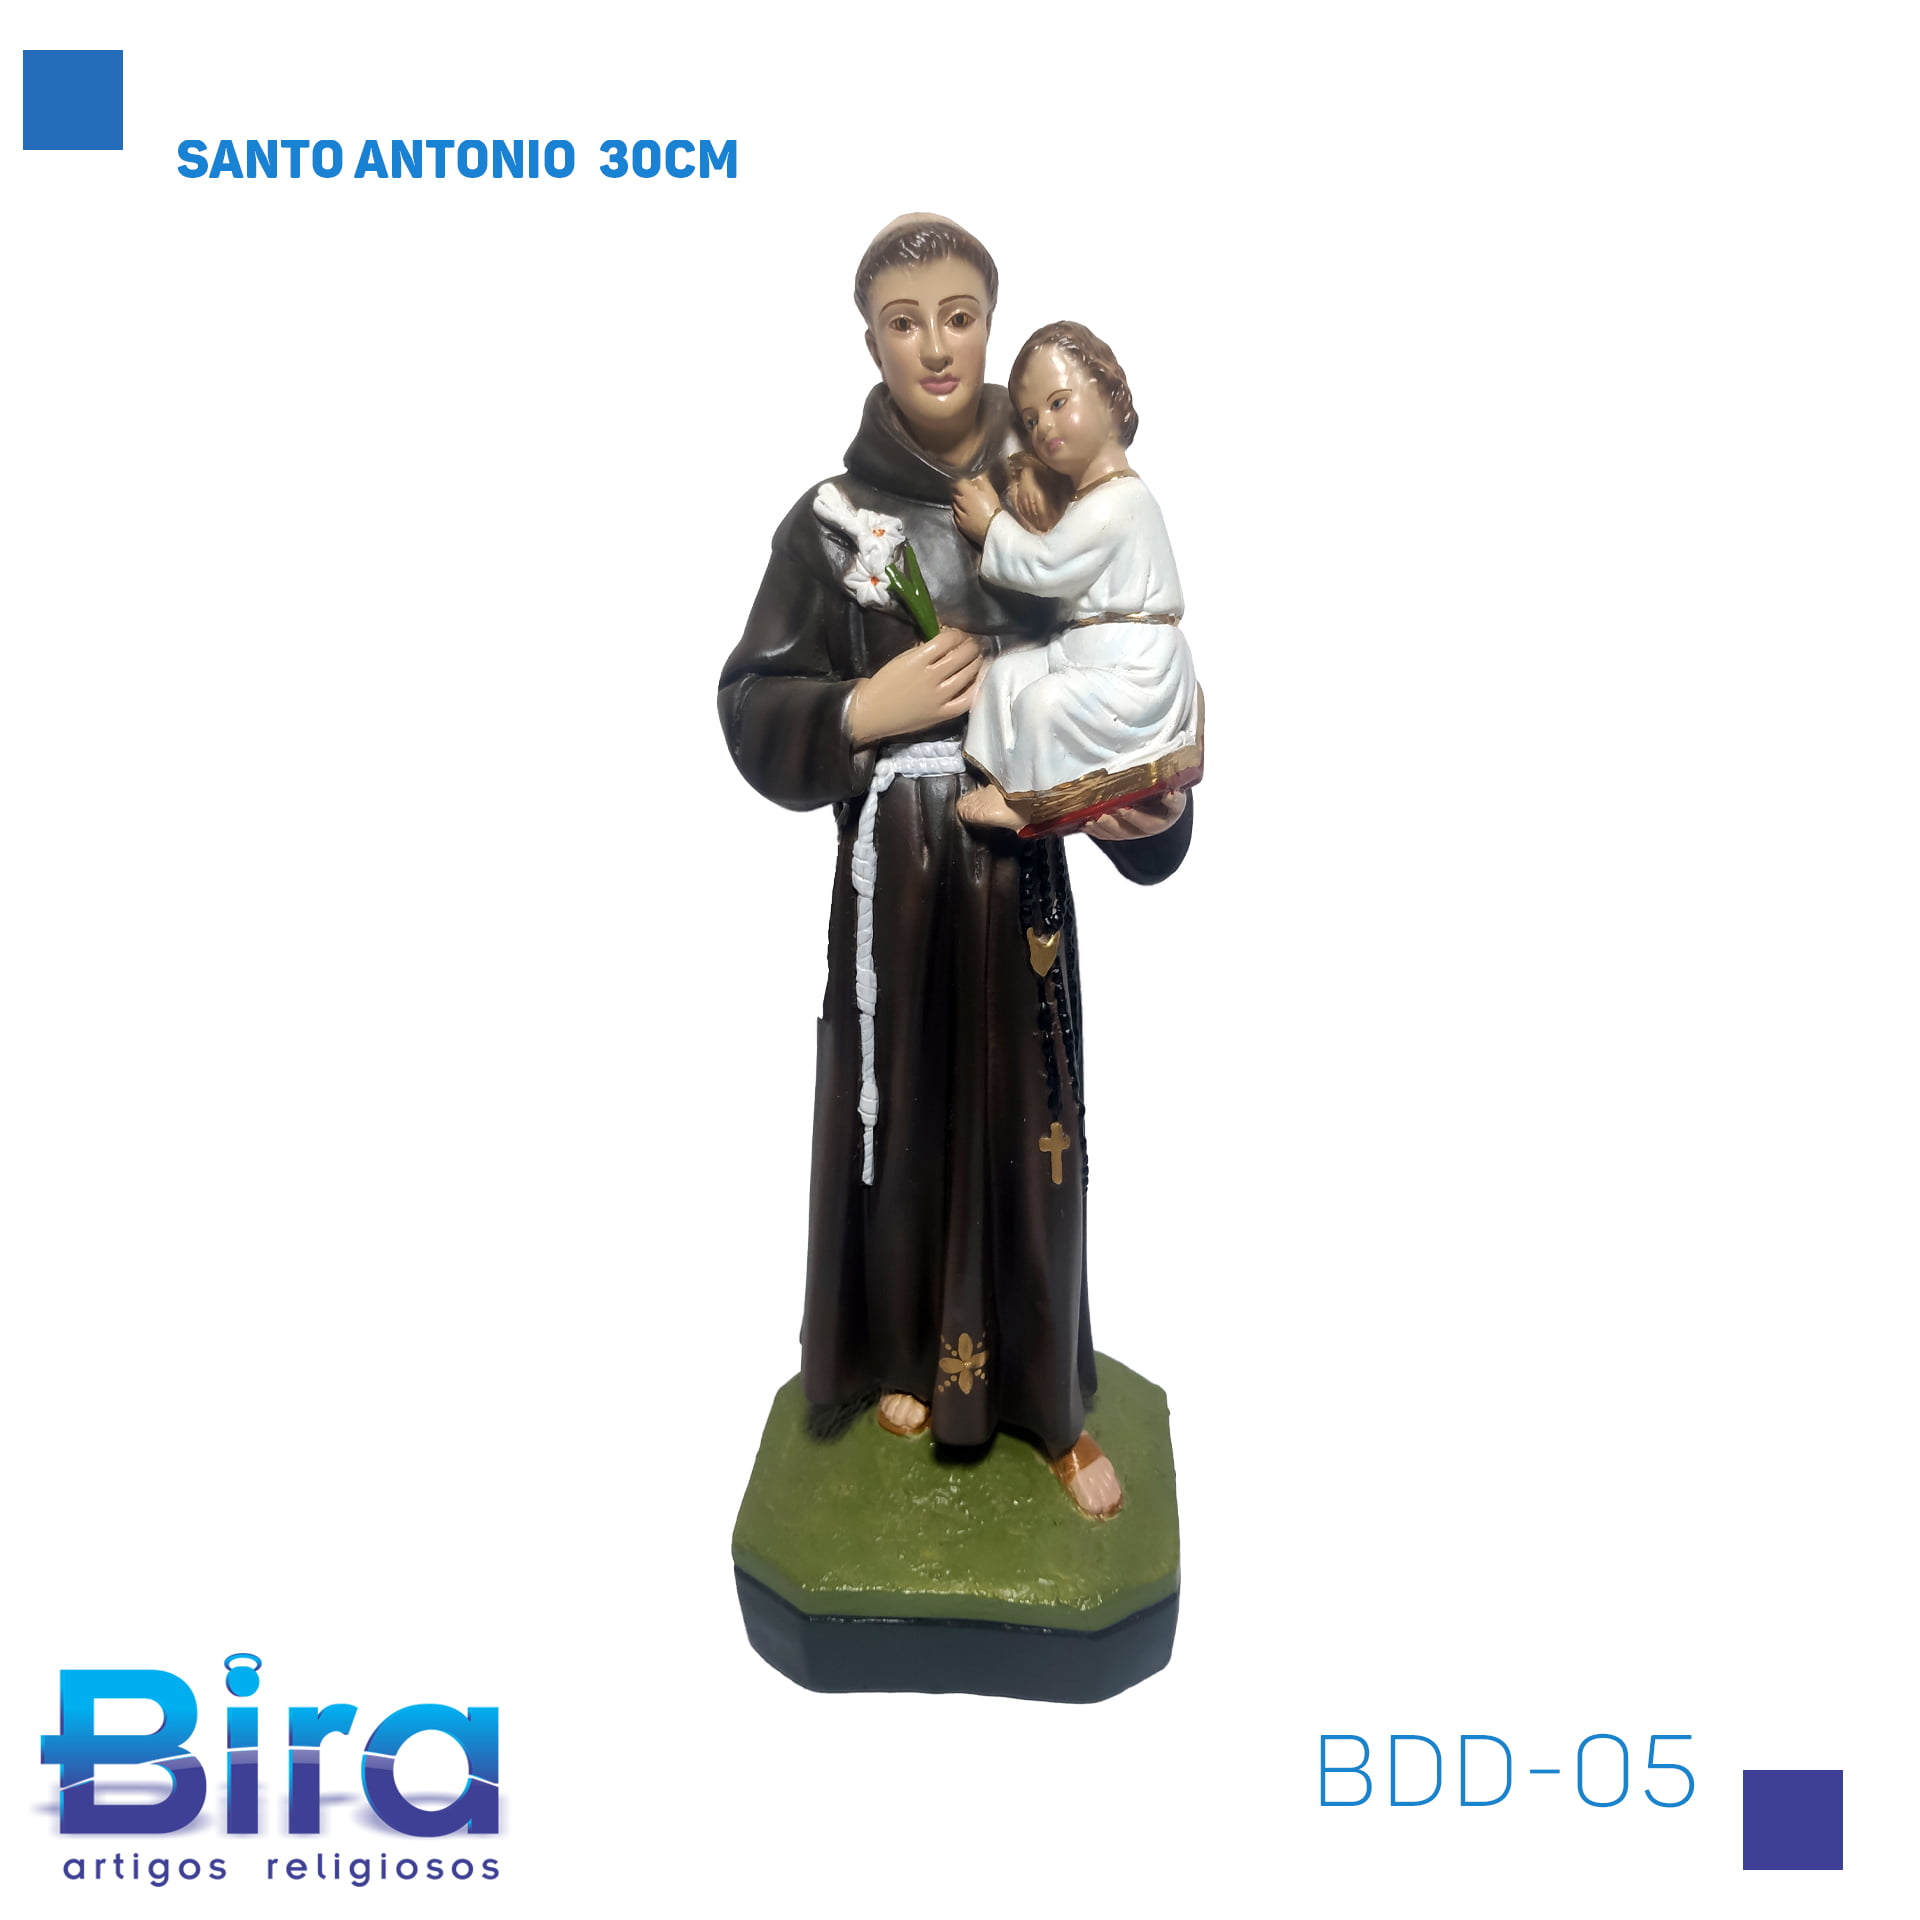 Bira Artigos Religiosos - SANTO ANTONIO  30CM CÓD.: BDD-05